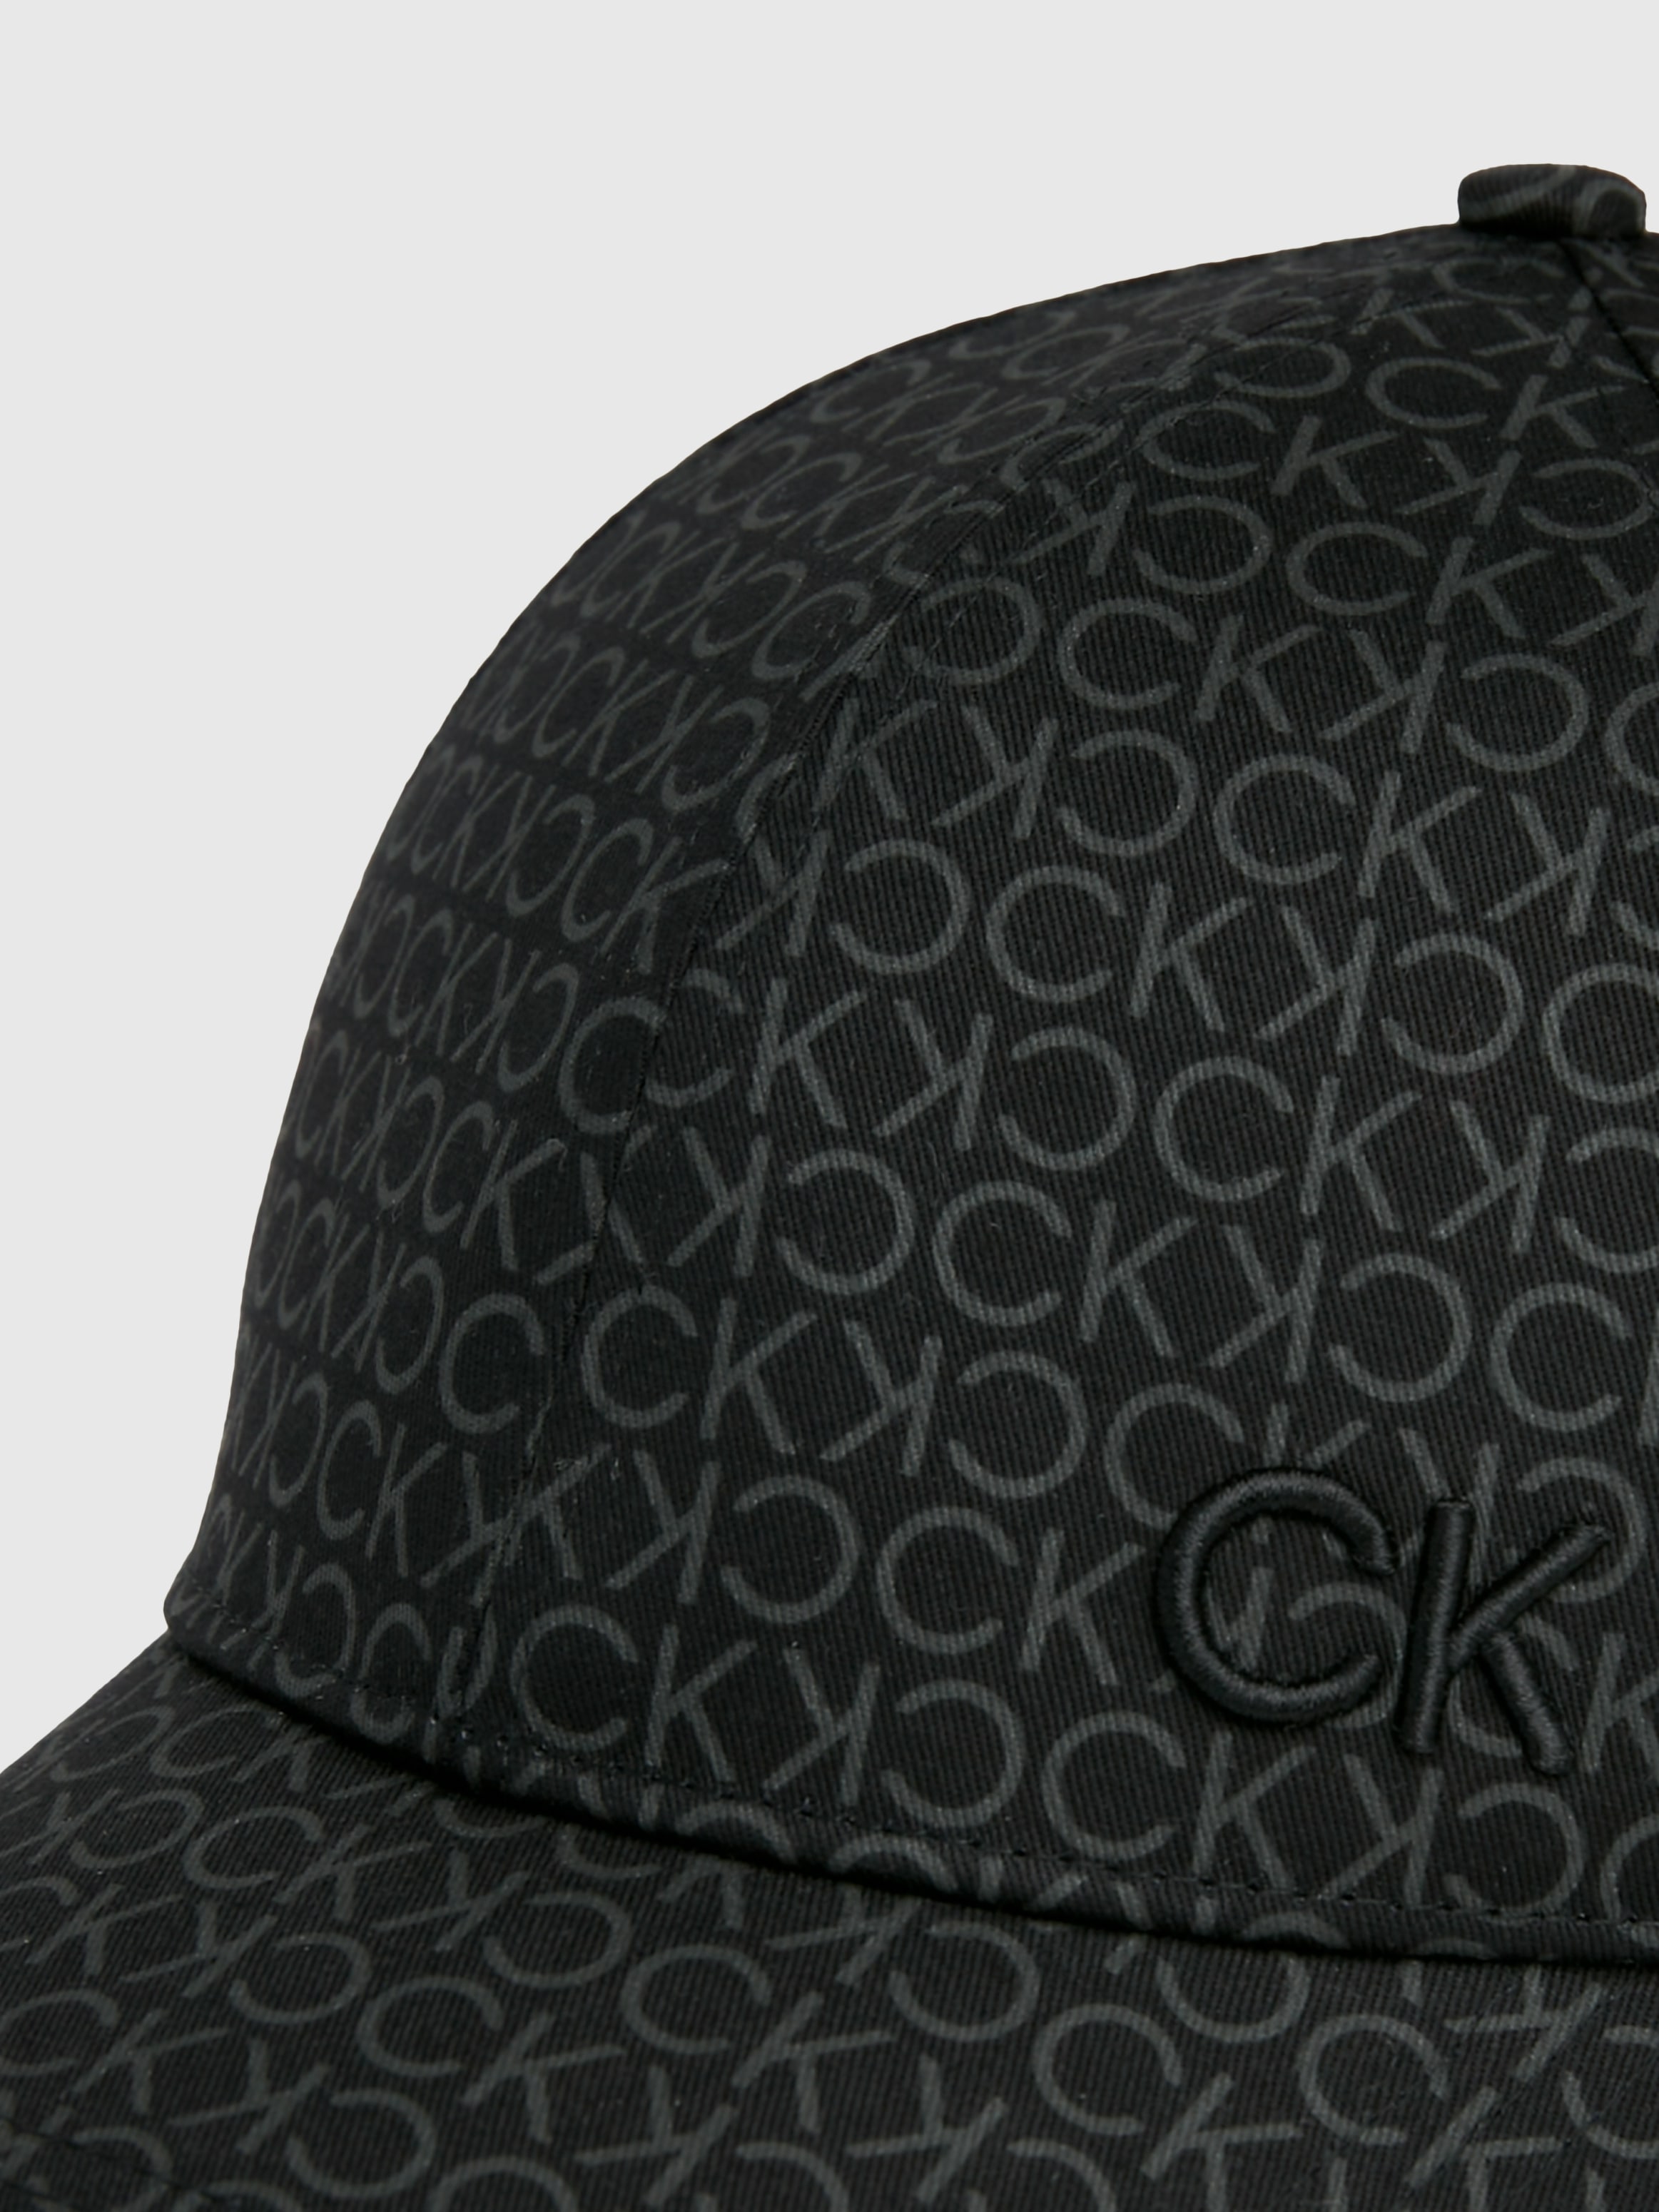 Calvin Klein Baseball Cap »CK MONOGRAM COTTON CAP«